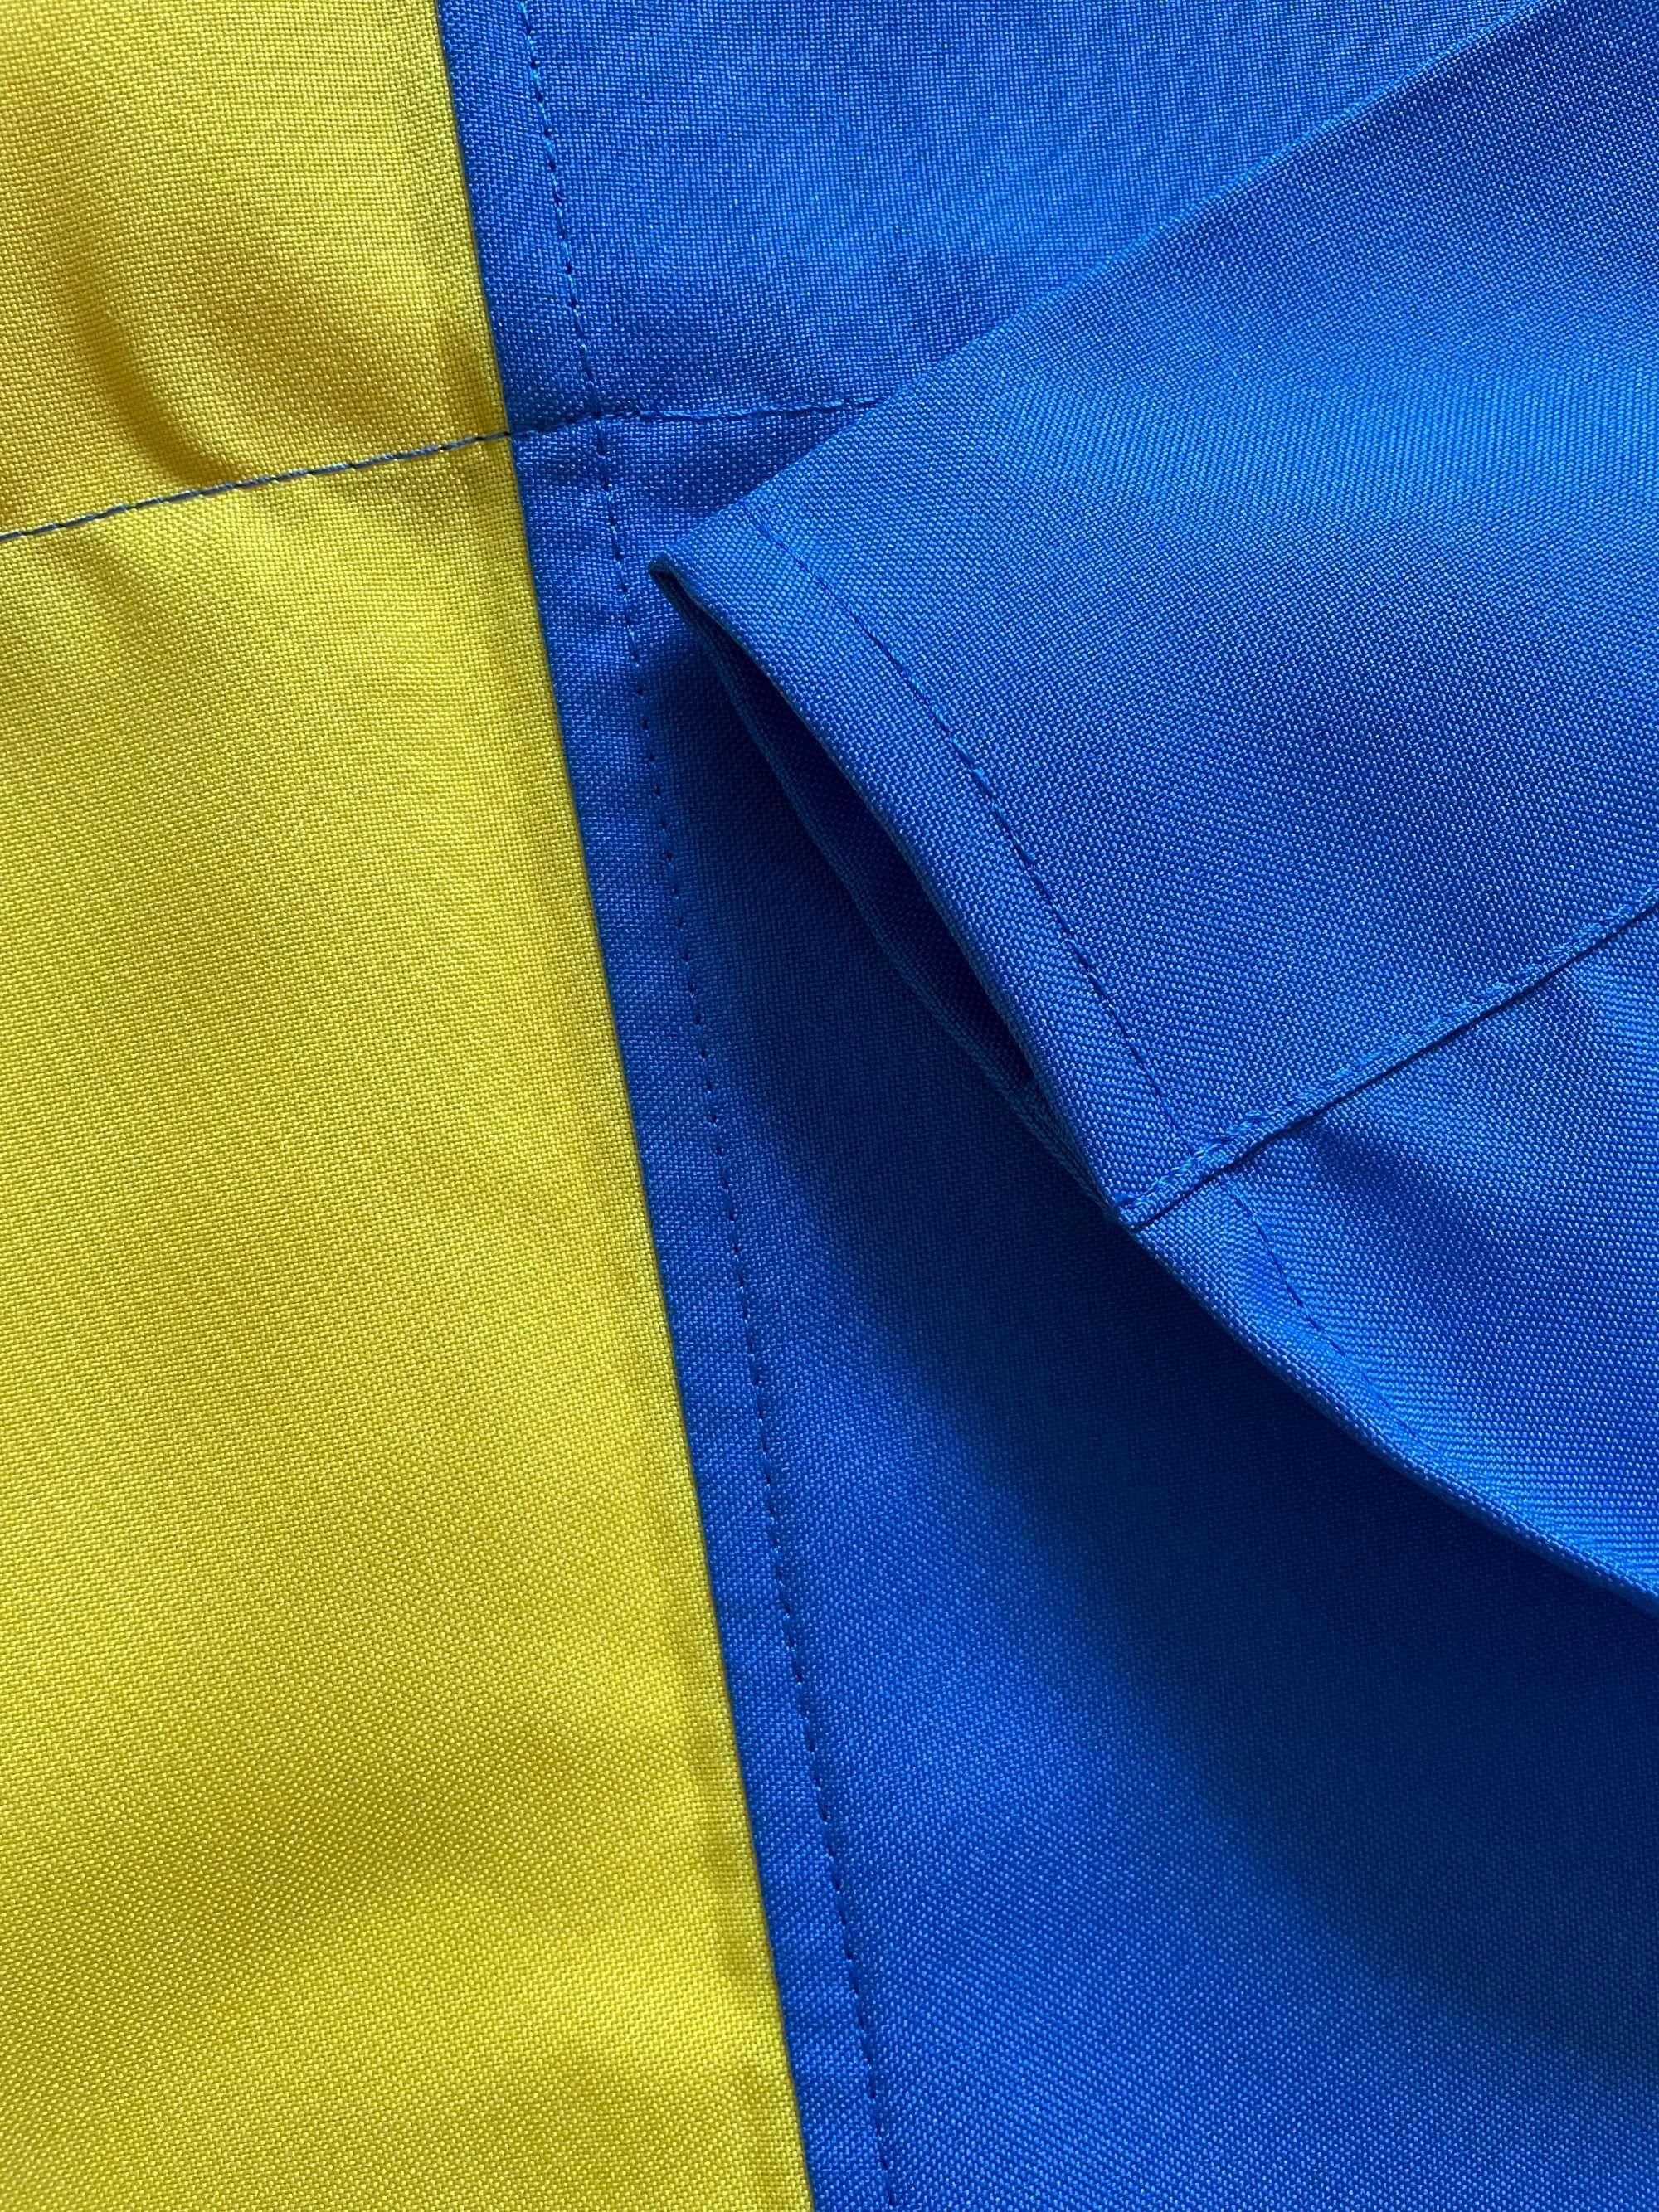 Український прапор-стяг України украинский флаг Украины габардин